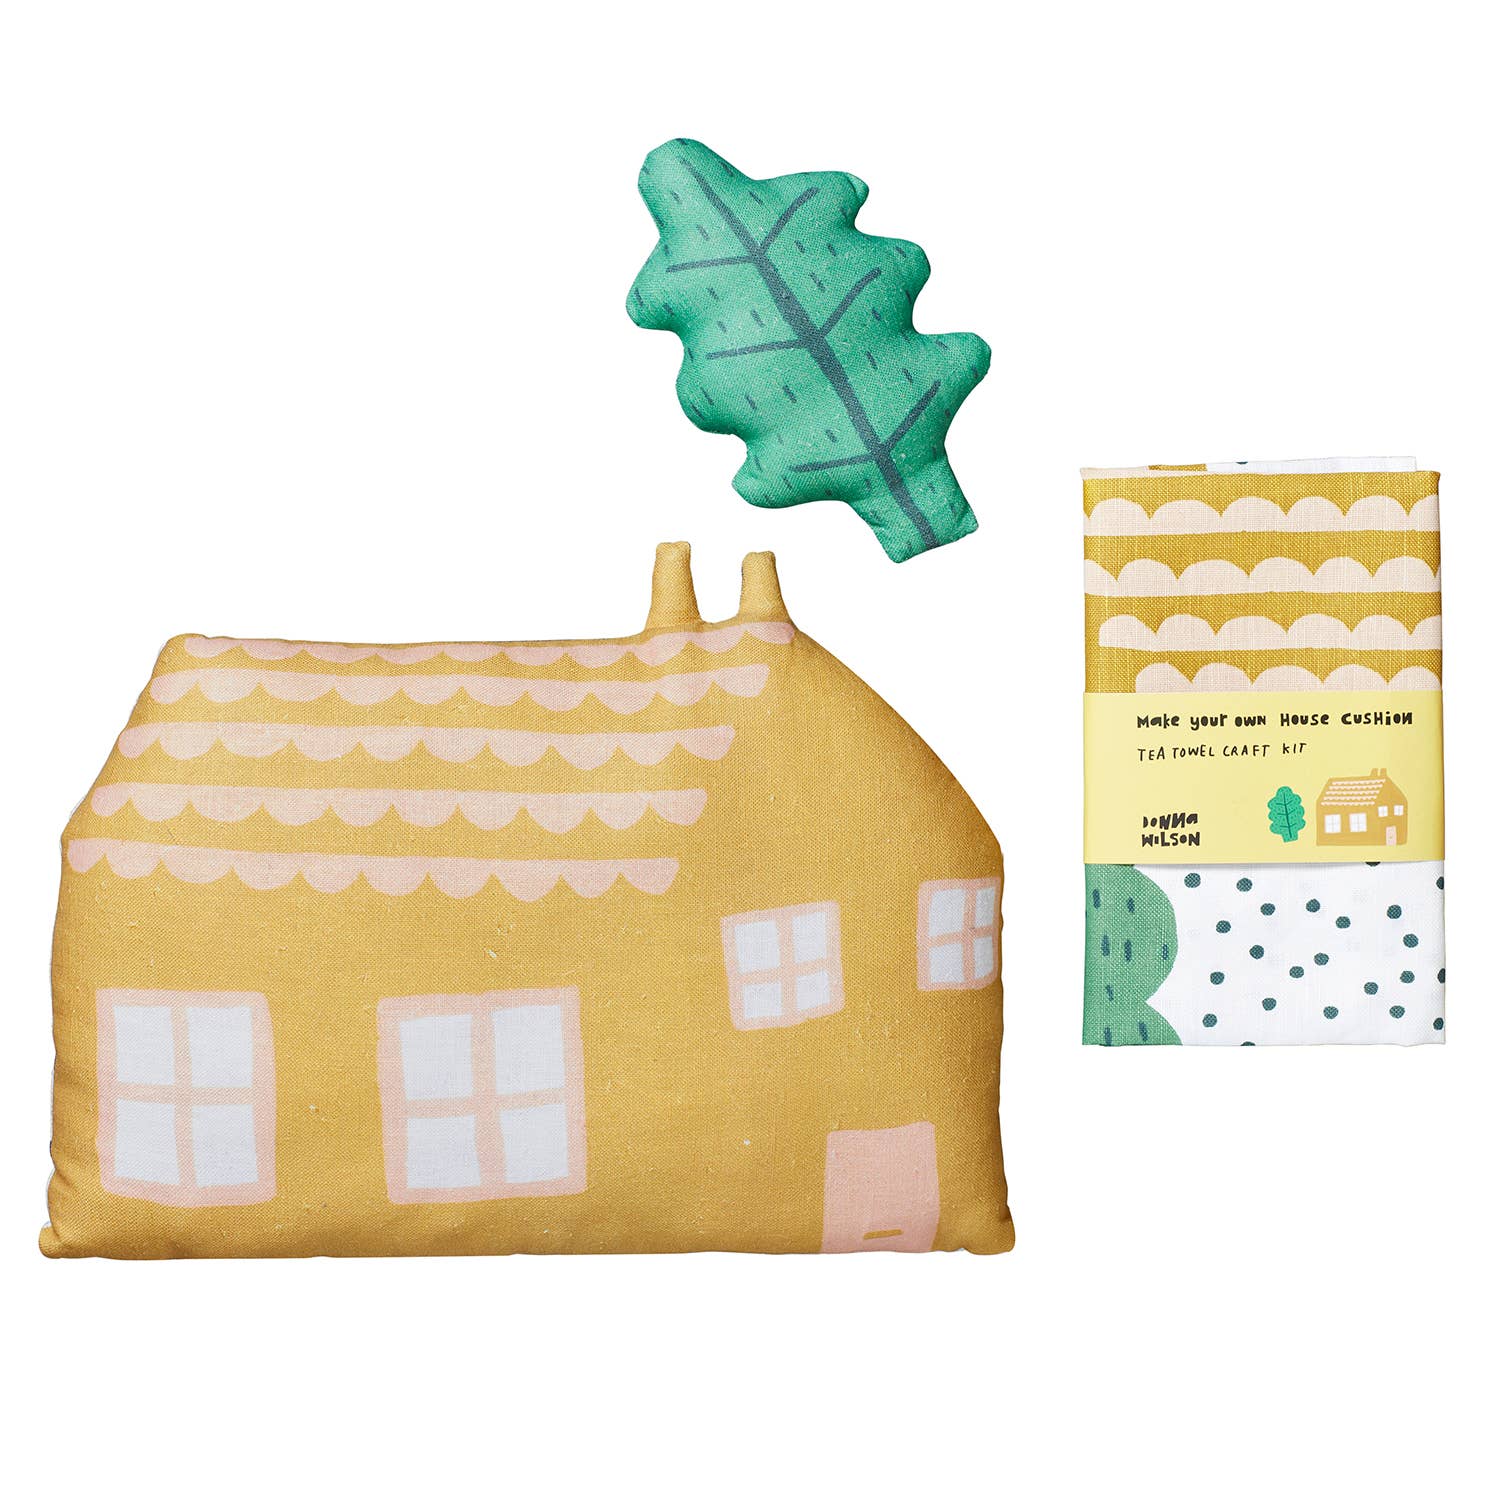 House Tea Towel Craft Kit